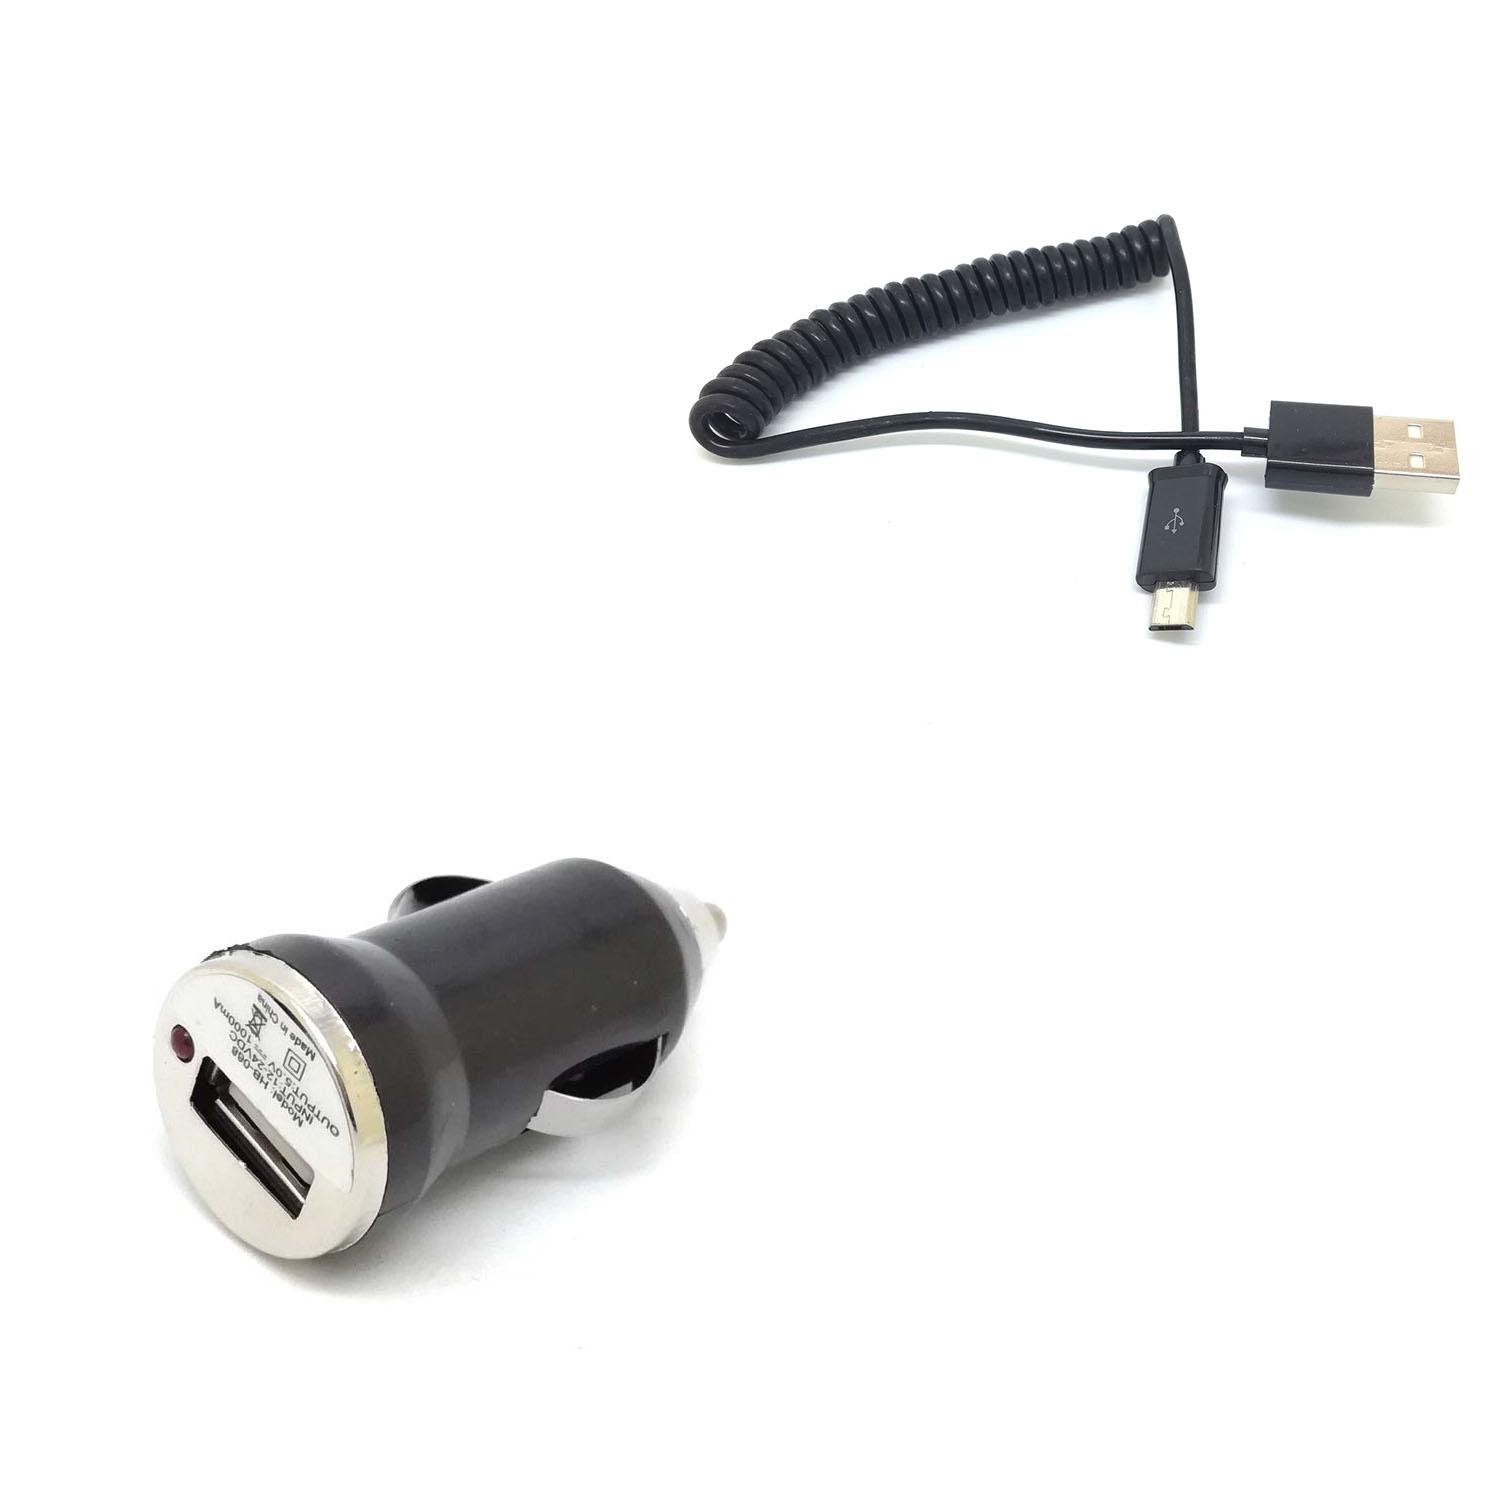 Изображение товара: Сетевое зарядное устройство 3 фута 1 м пружинный спиральный USB штекер к Micro USB 5-контактный адаптер кабель шнур новый для телефона планшета